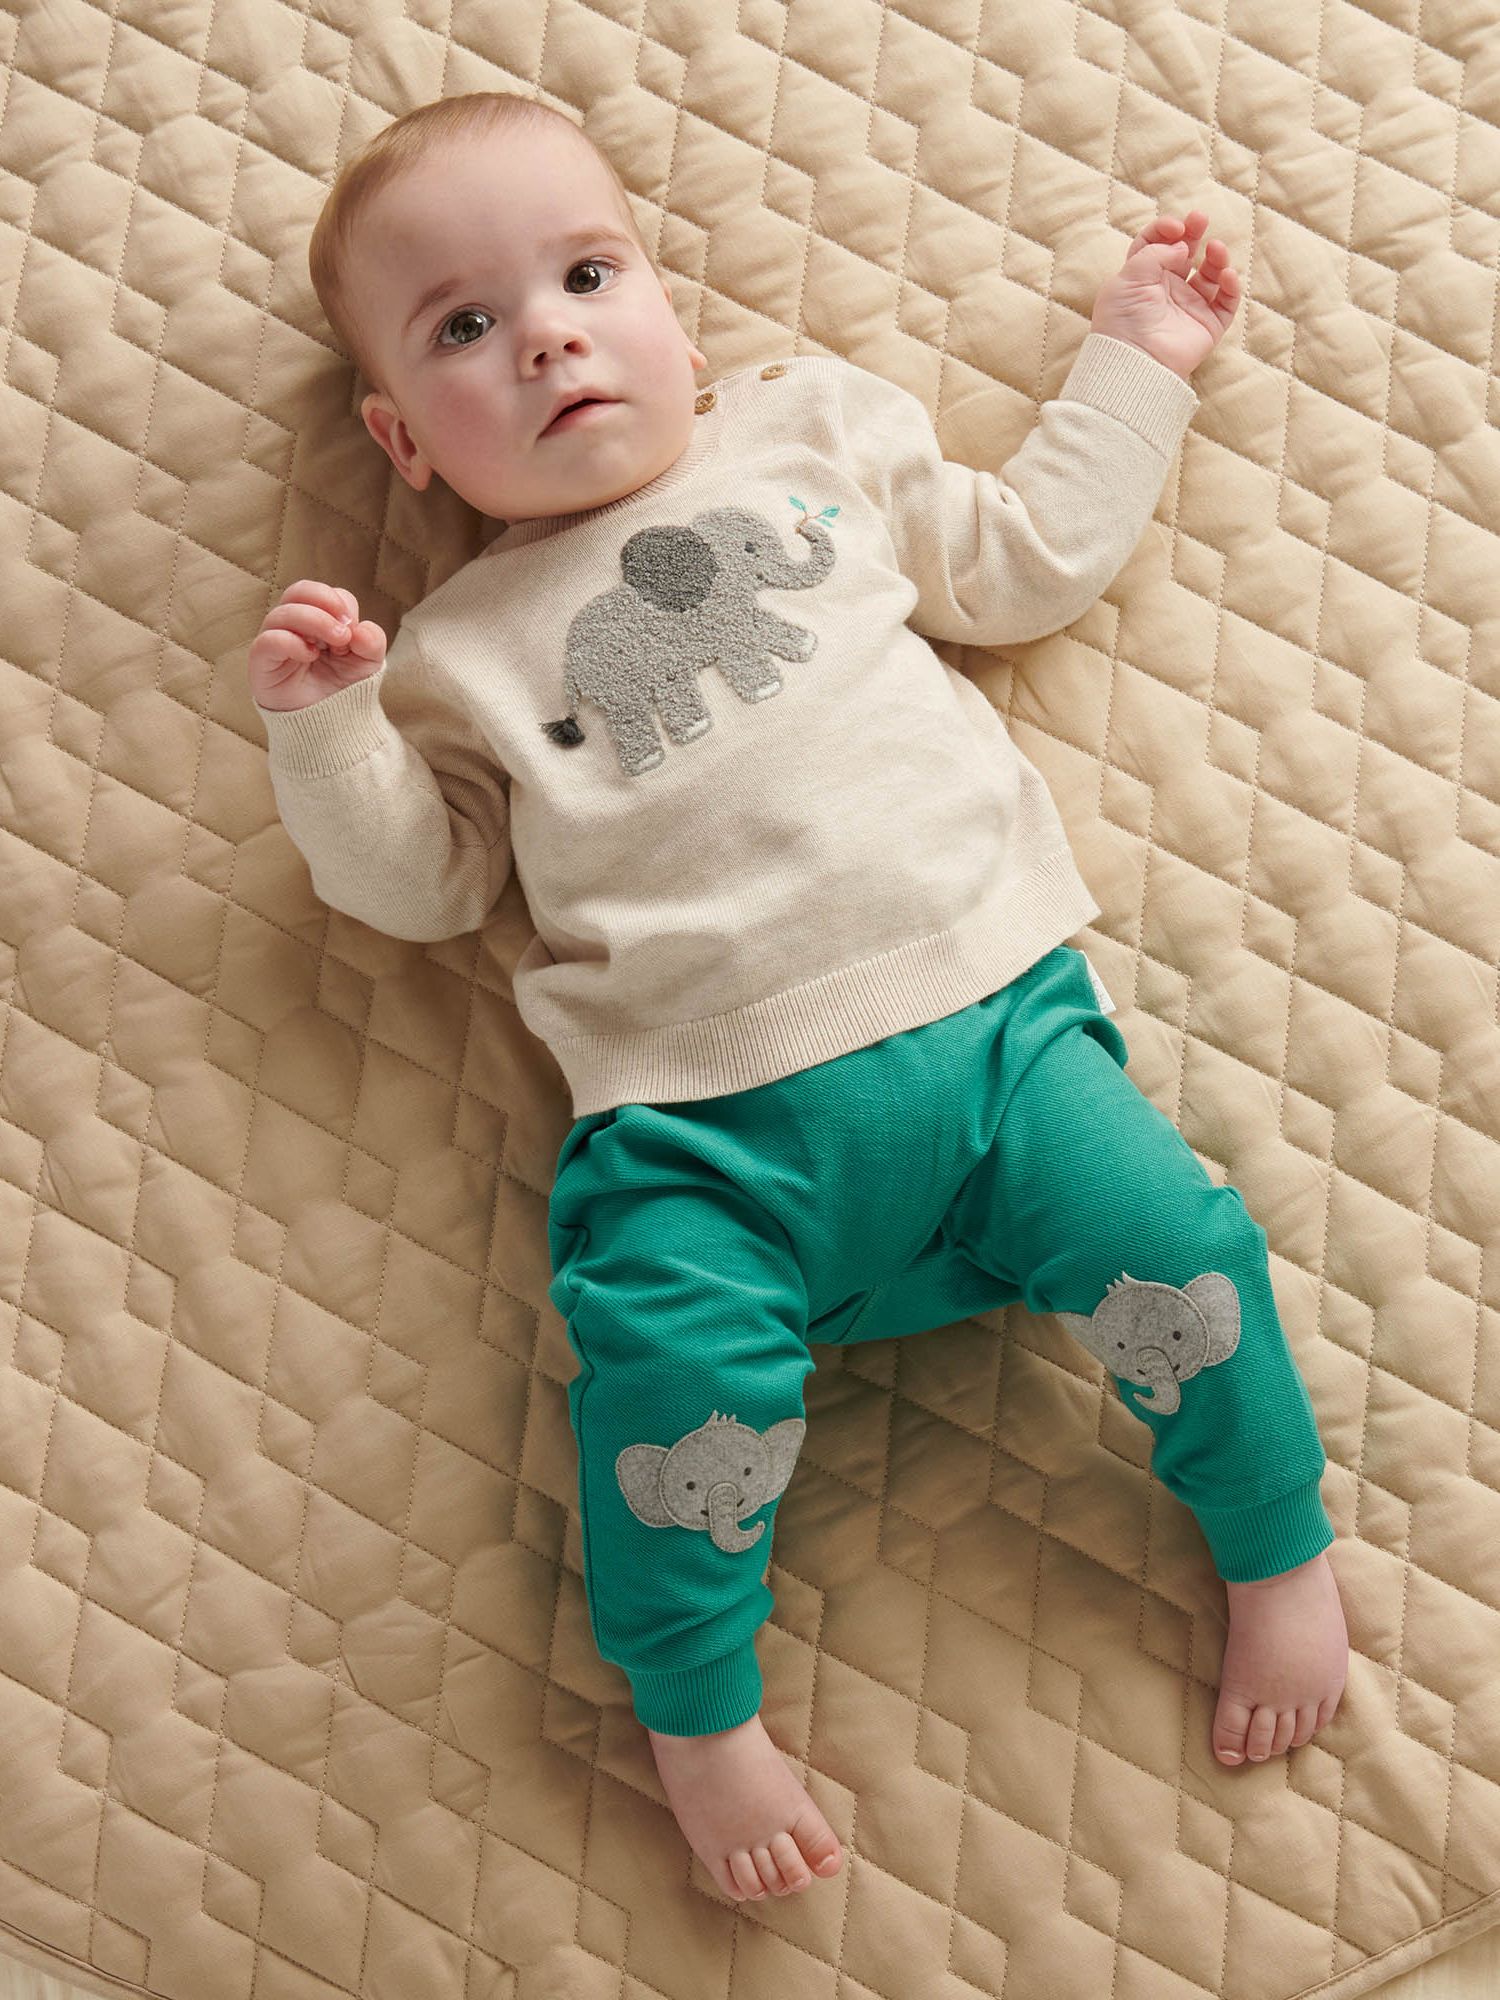 Purebaby Baby Elephant Textured Jumper, Beige/Multi, 6-12 months